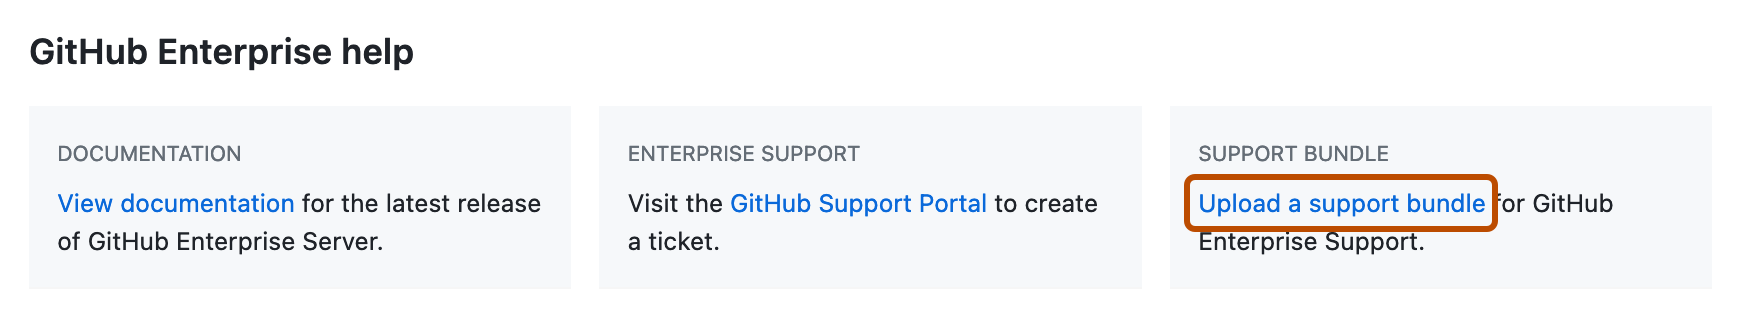 Captura de tela da seção "Ajuda do GitHub Enterprise" da página de configurações da empresa. O botão "Carregar um link de pacote de suporte" está realçado com um retângulo laranja escuro.